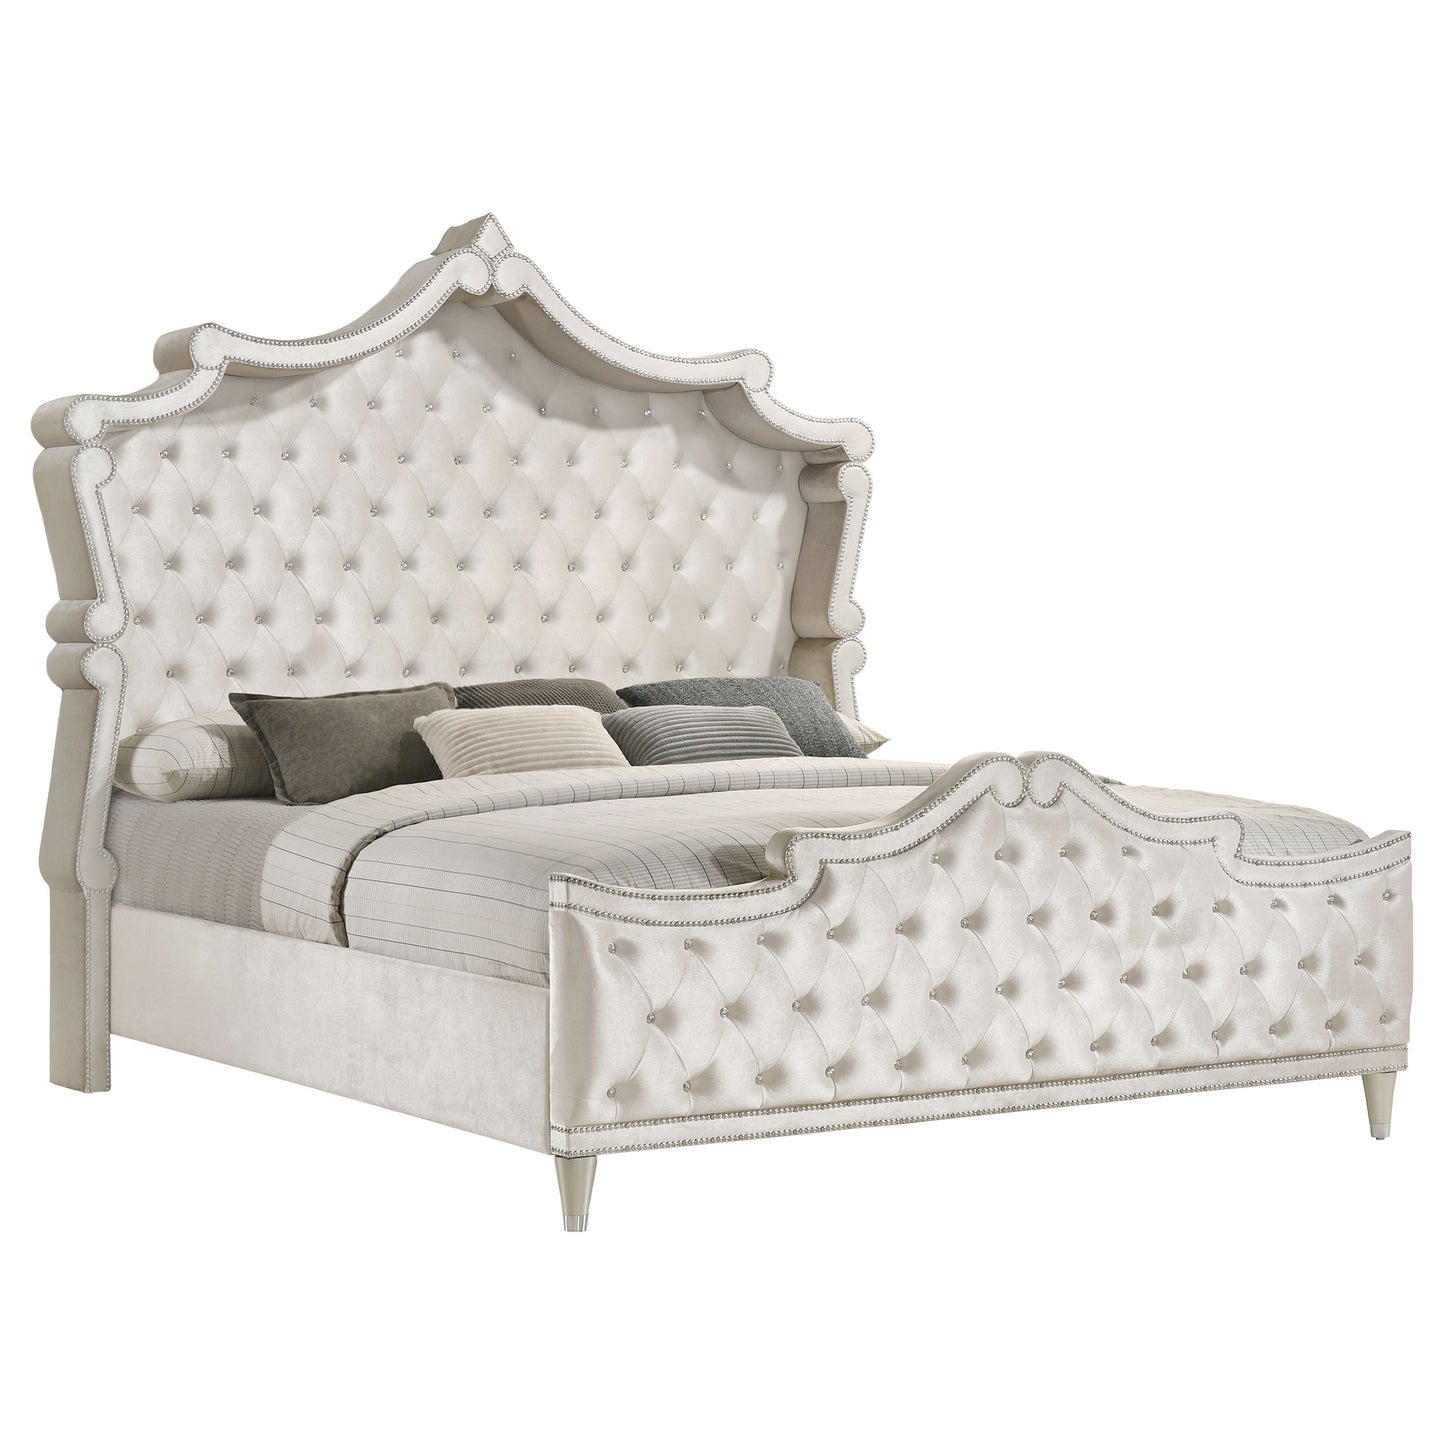 Antonella 4-piece Queen Bedroom Set Ivory